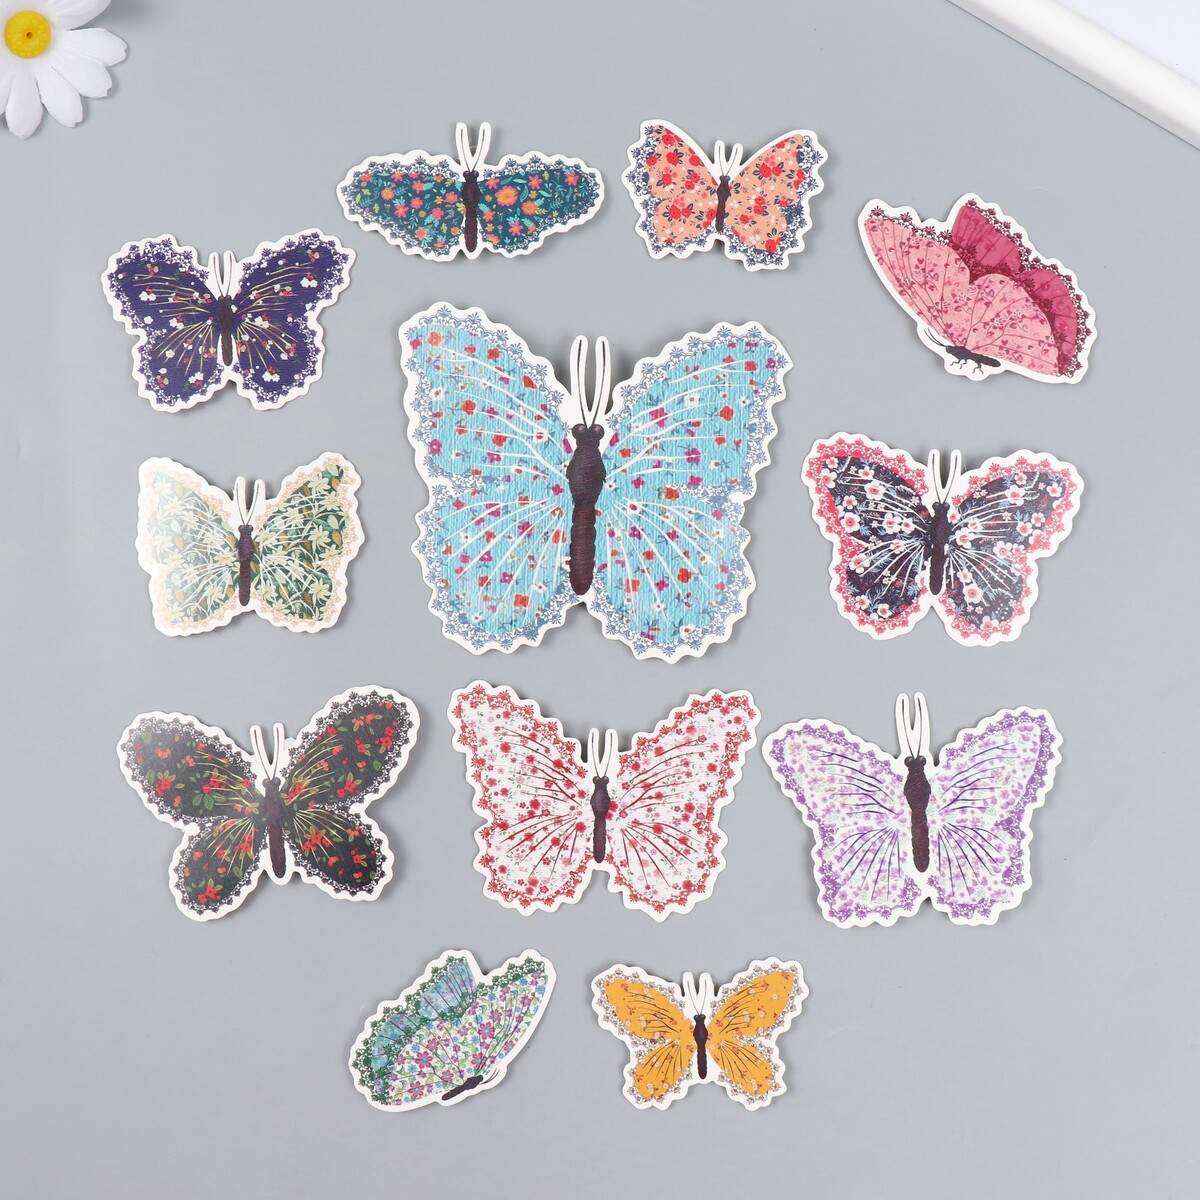 Бабочки картон набор прищепок 6 шт в пакете с хедером цветочки в полоску горошек и бабочки 11 06943 16